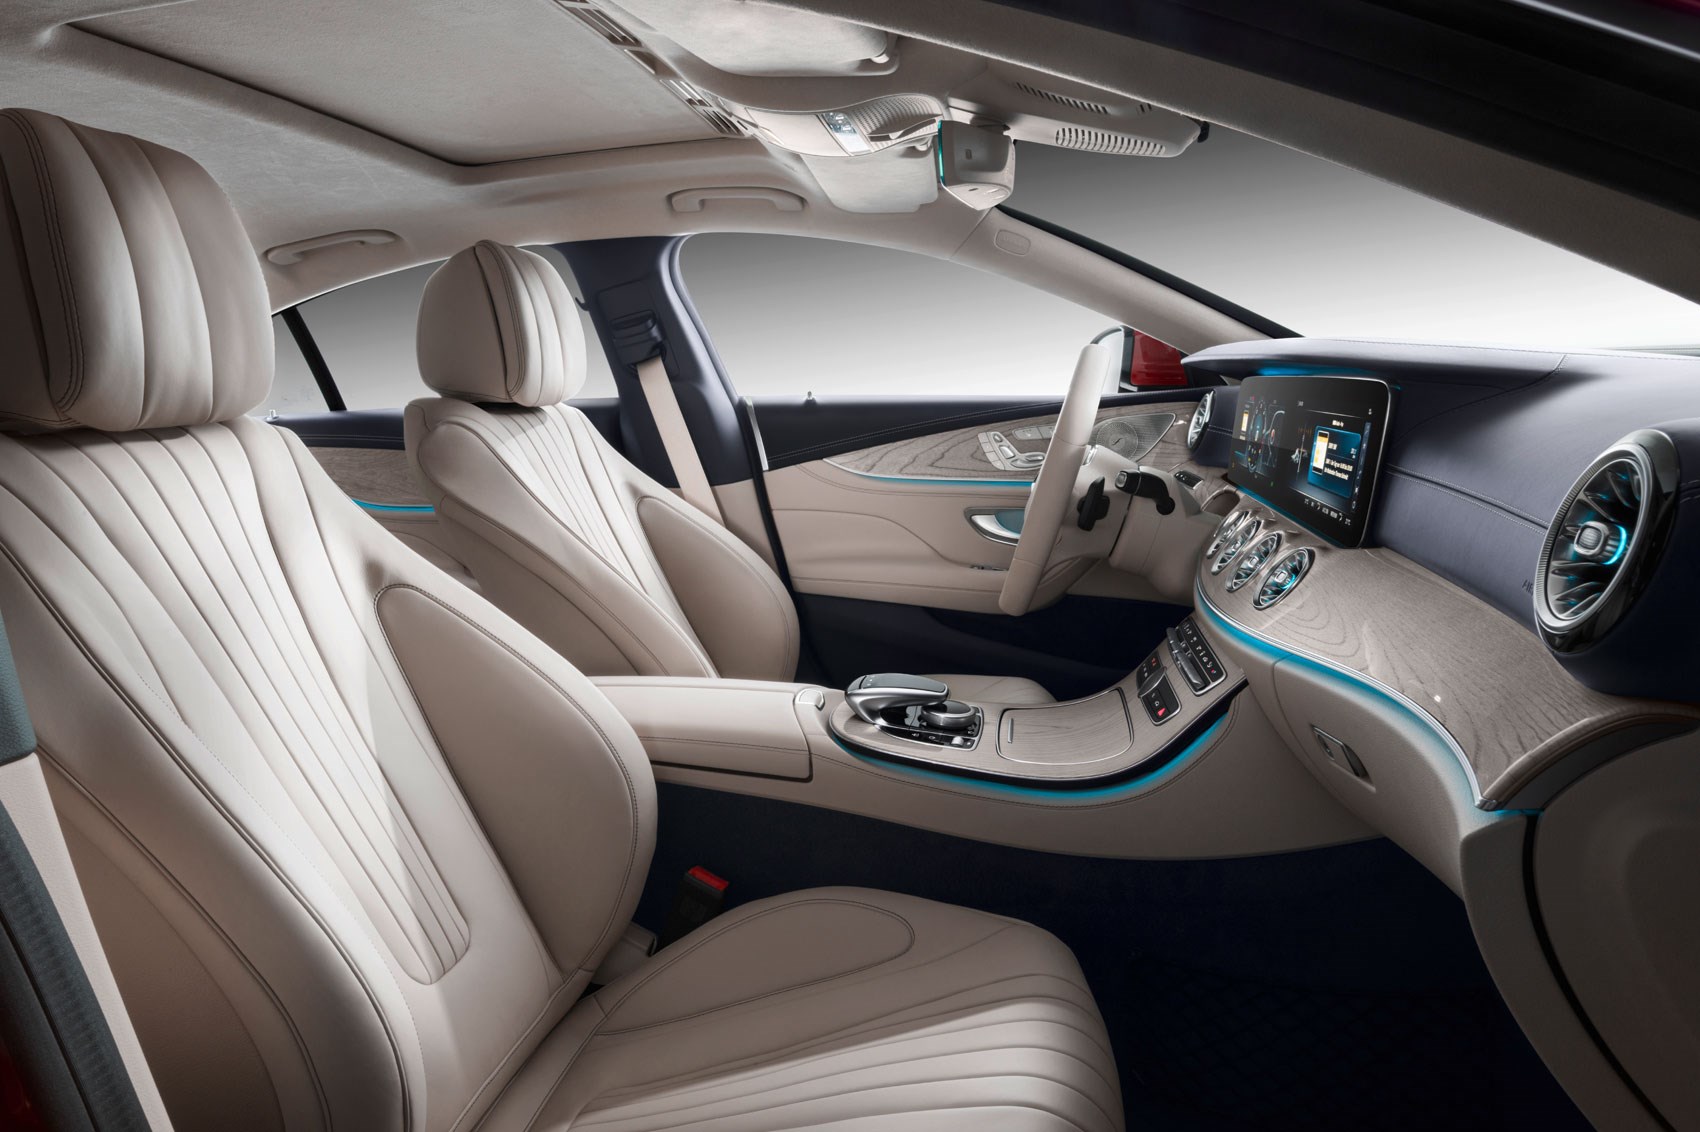 Mercedes-Benz CLS 350 interior - Seats